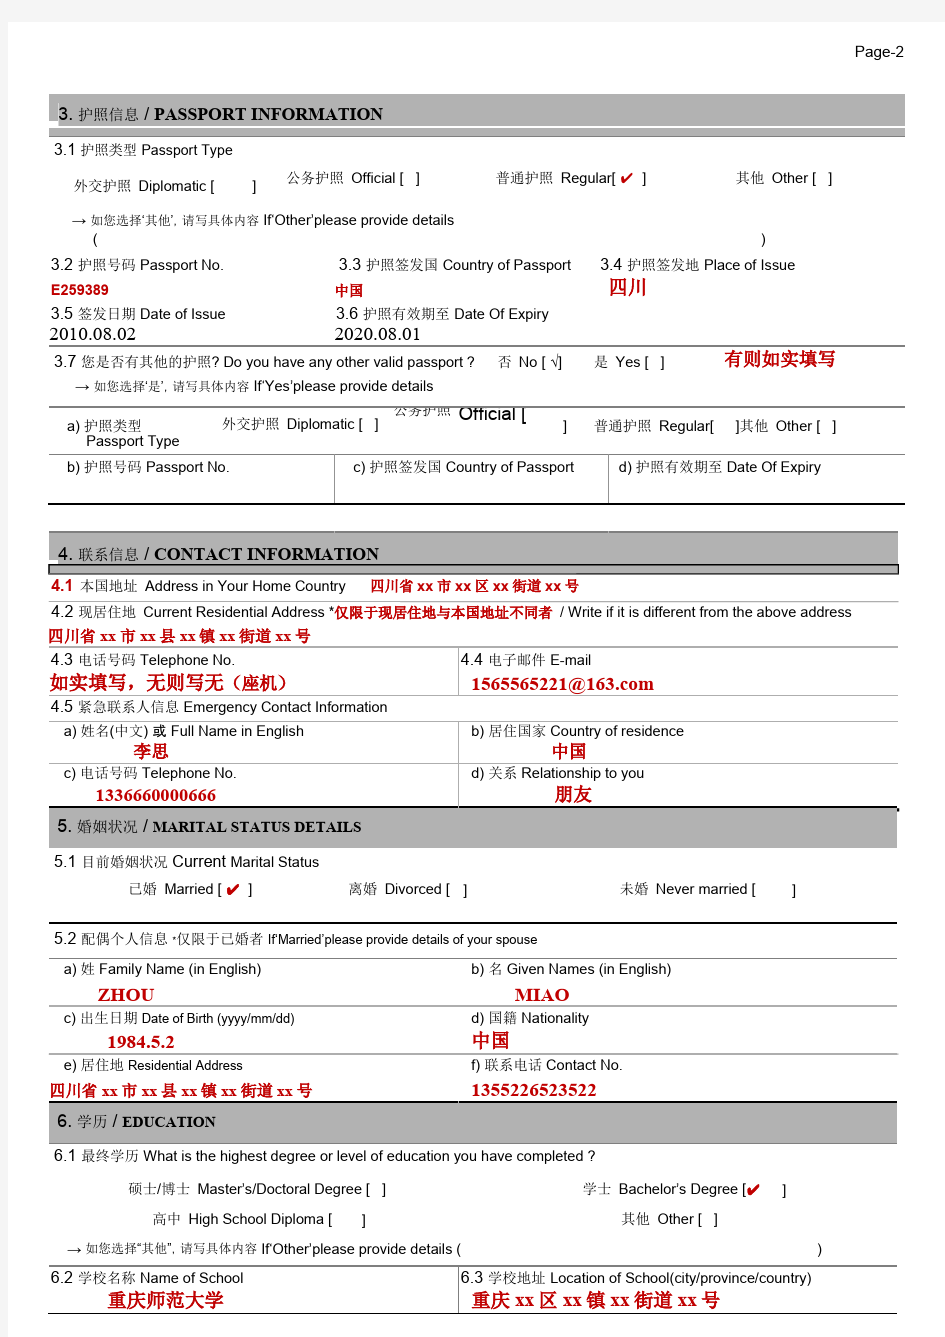 2018年 B-2韩国签证申请表模板